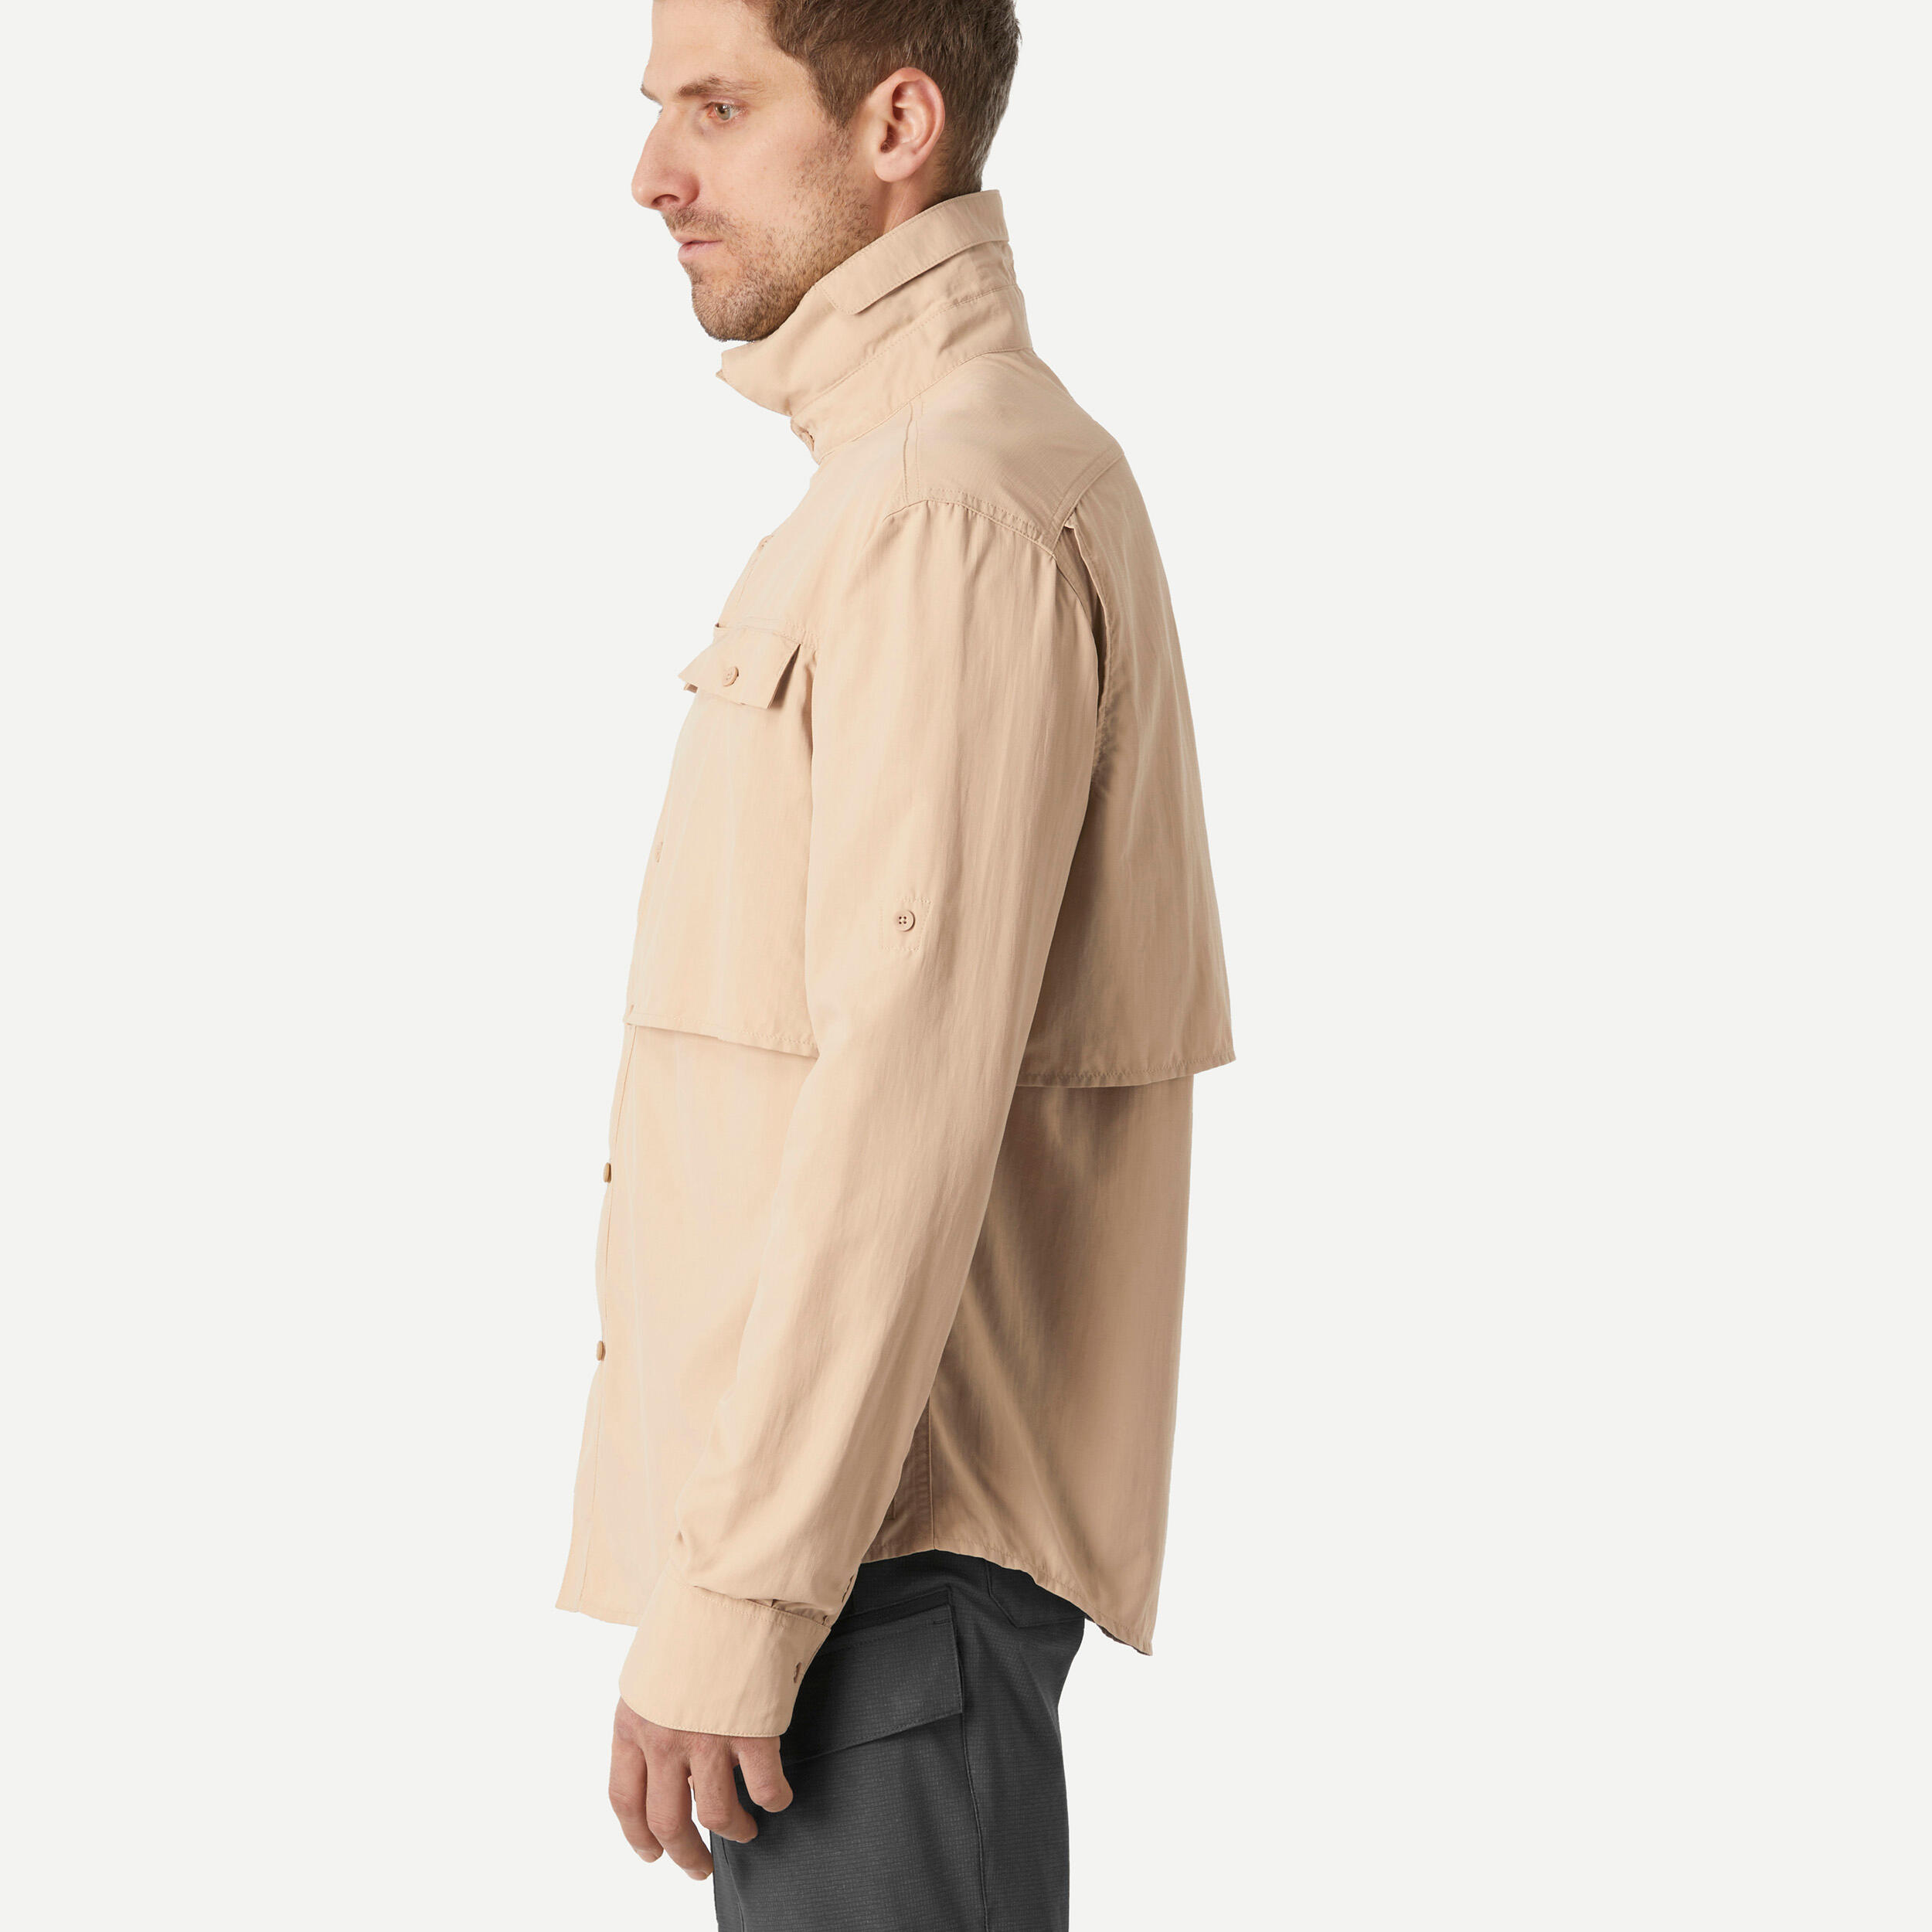 Men's long sleeved anti-UV desert trekking shirt - DESERT 900 - Beige 2/10